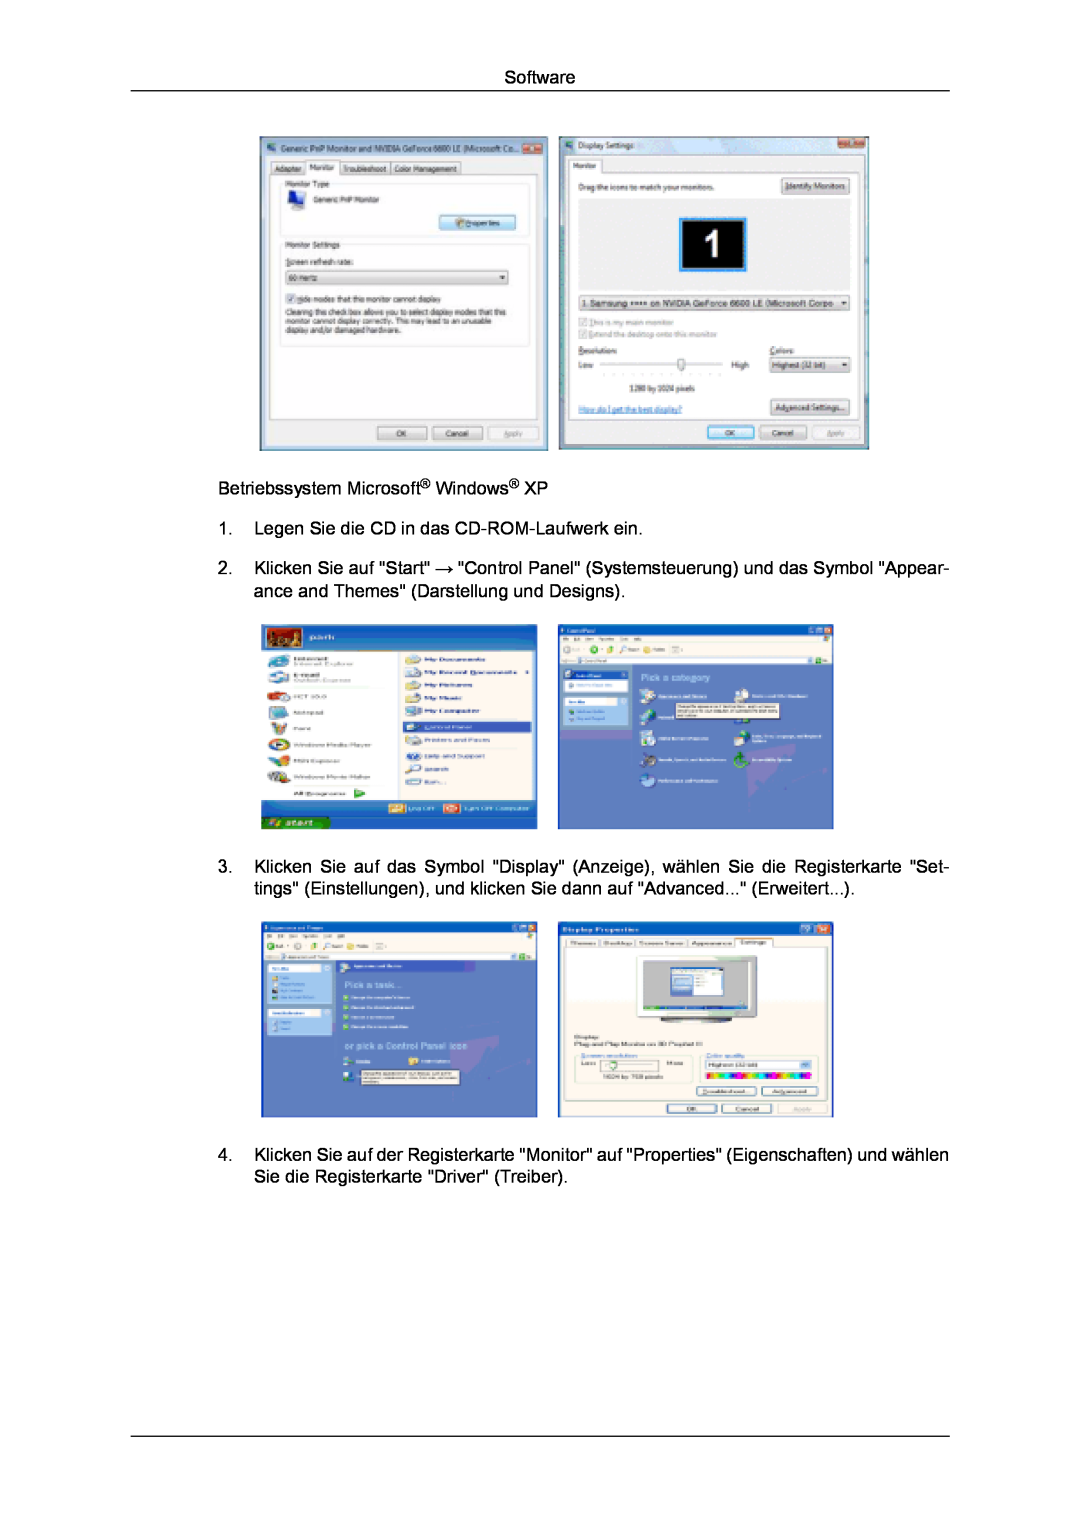 Samsung LH32MGULBC/EN manual Software Betriebssystem Microsoft Windows XP, Legen Sie die CD in das CD-ROM-Laufwerk ein 